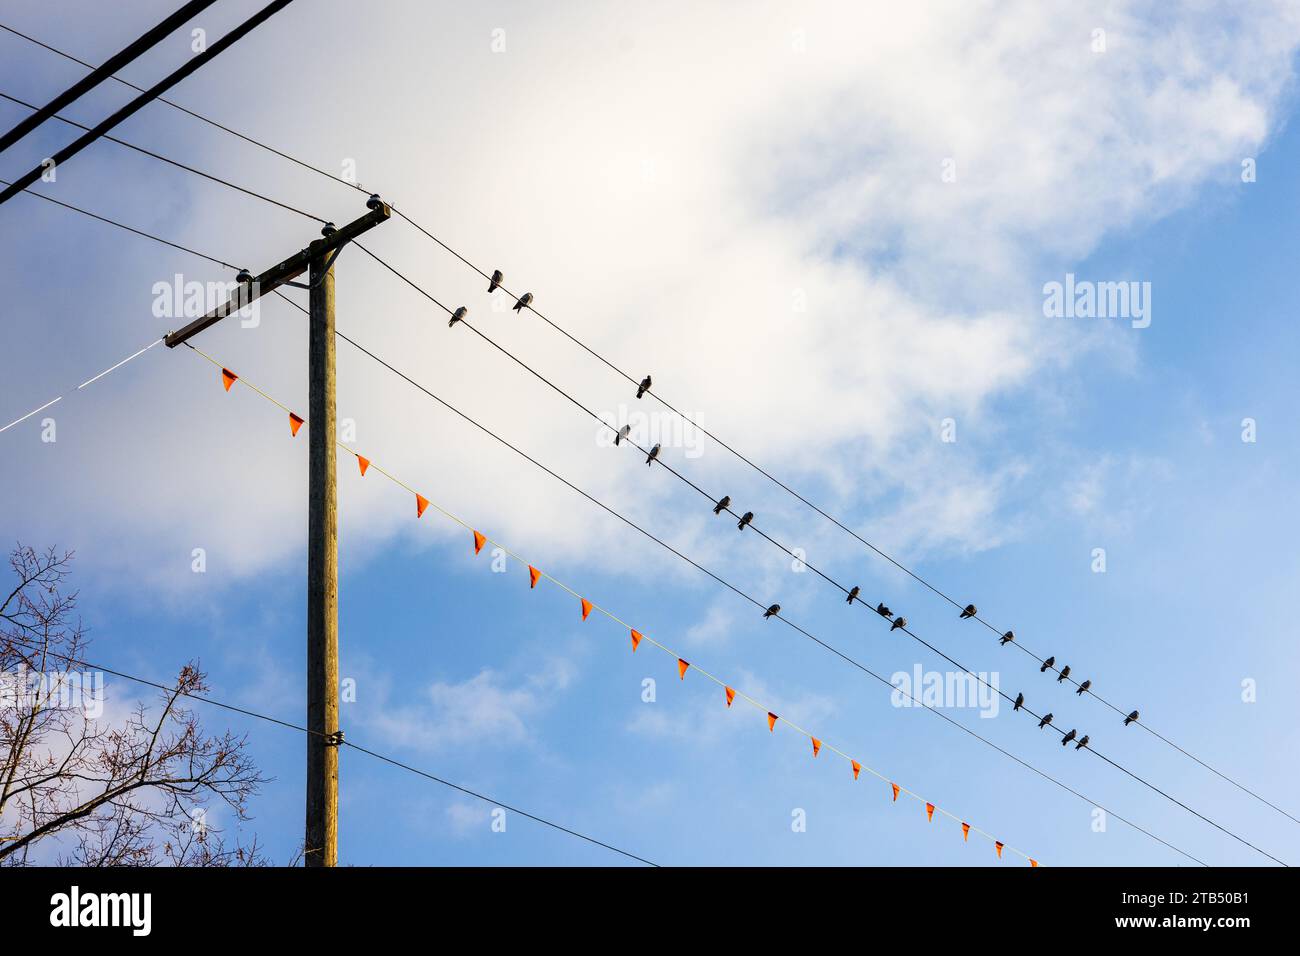 Les pigeons sont assis sur des fils téléphoniques à Vancouver, au Canada. Ils sont silhouettés contre un ciel bleu avec des nuages blancs. Banque D'Images